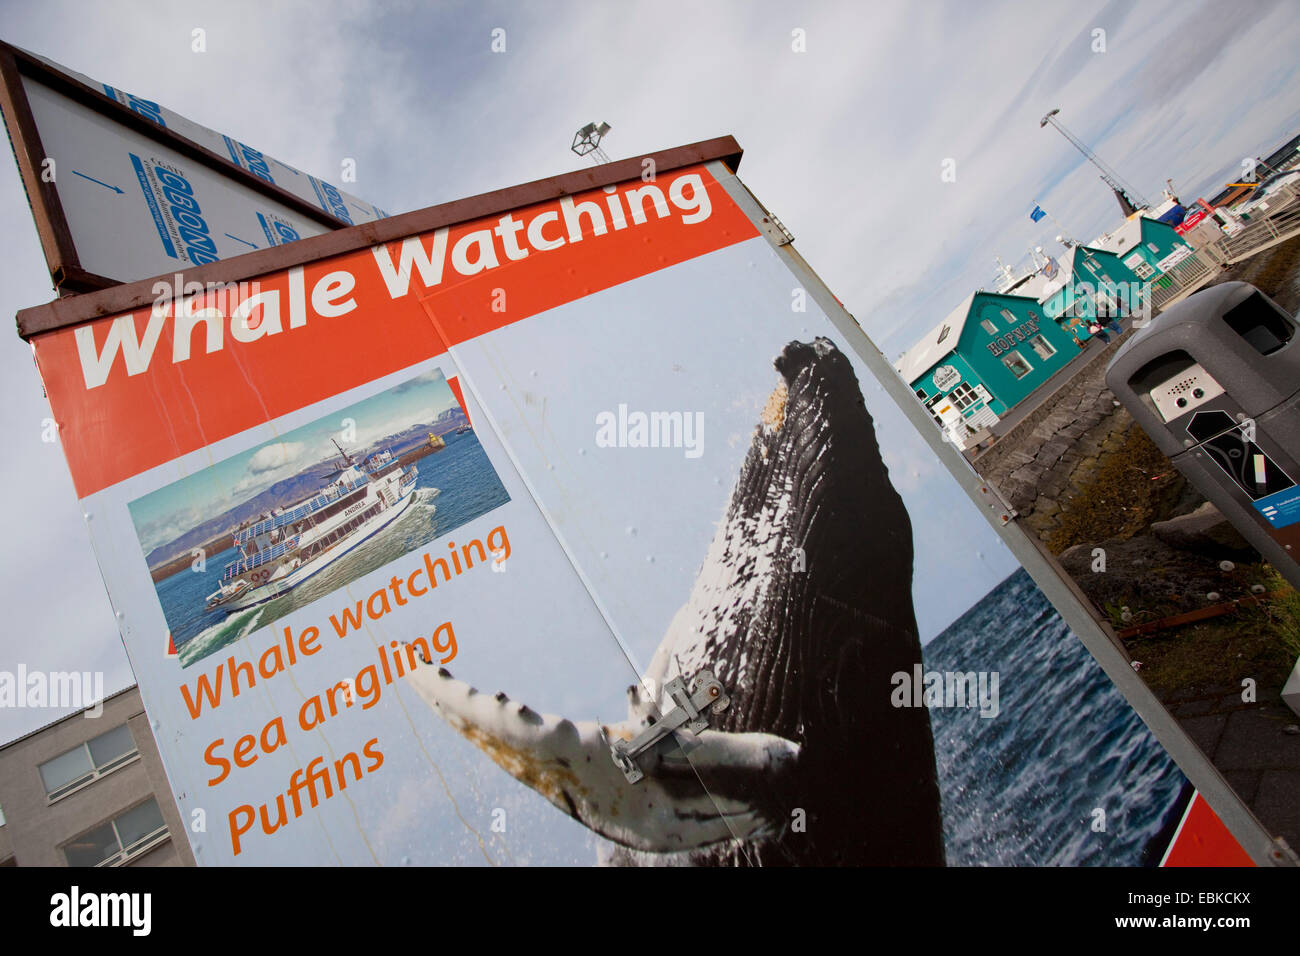 Promotions pour des excursions d'observation des oiseaux marins et des baleines, l'Islande, Reykjavik Banque D'Images